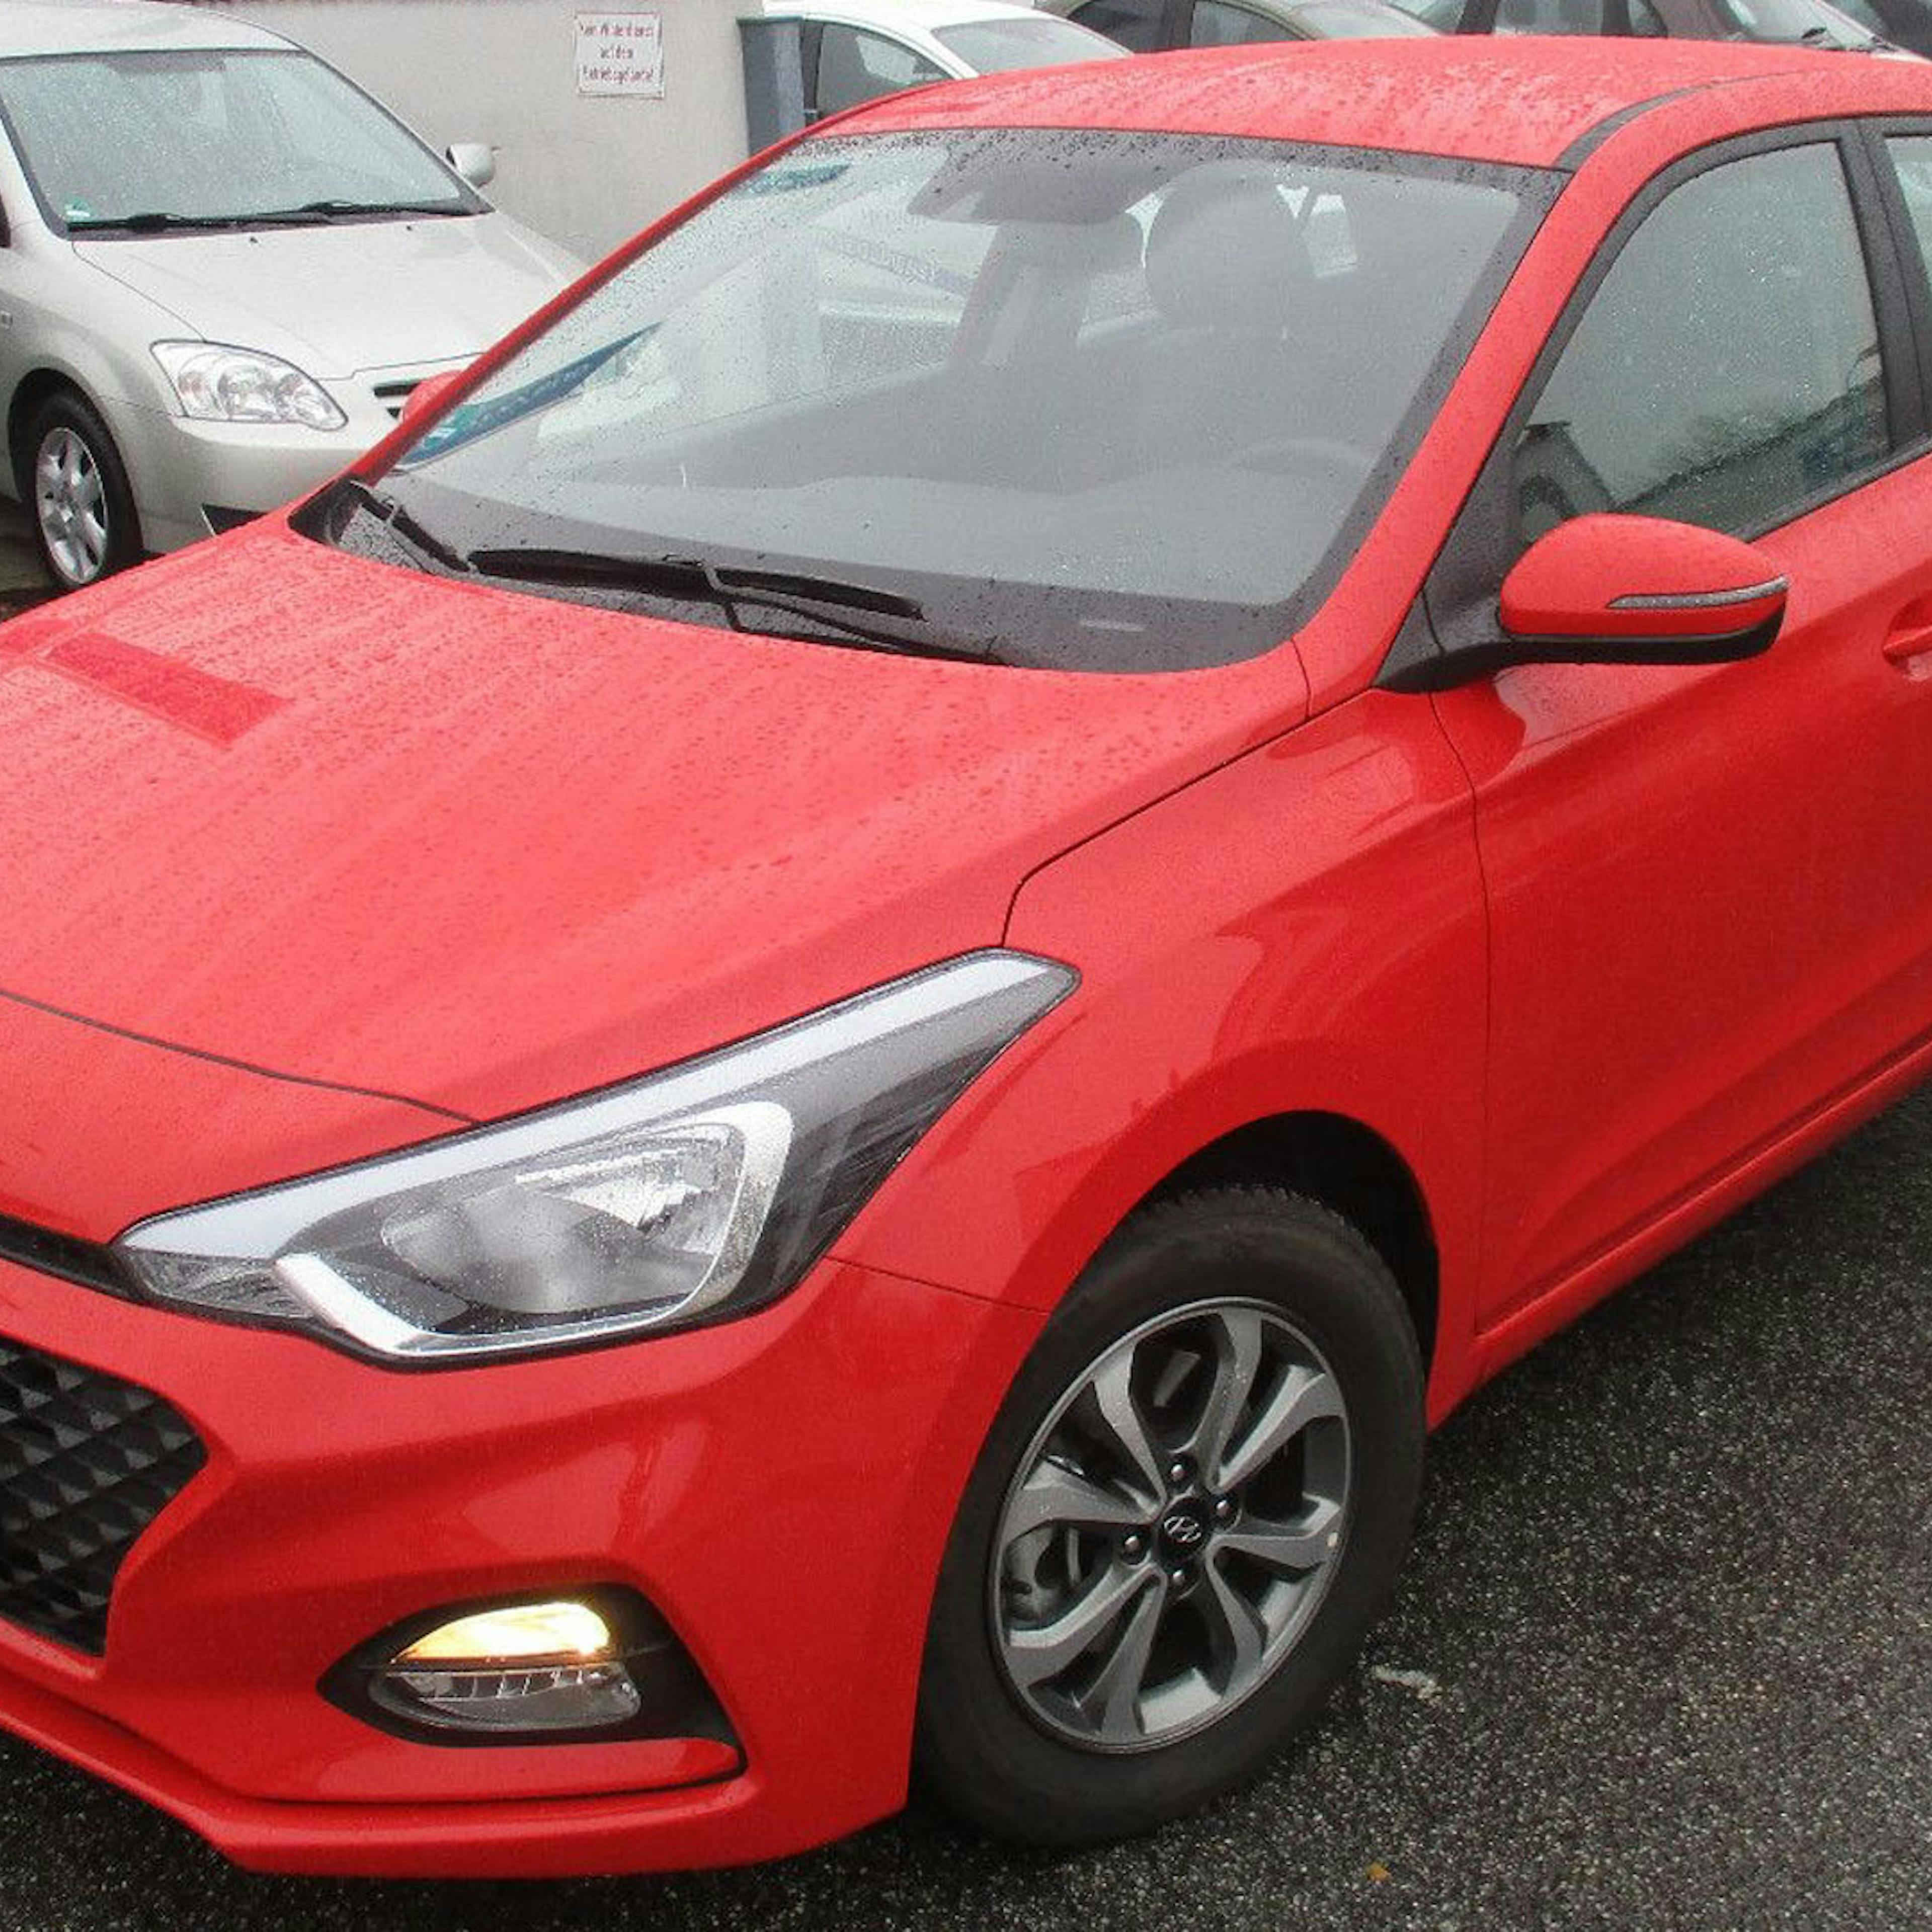  Ein roter Hyundai i20 steht auf einem Parkplatz.